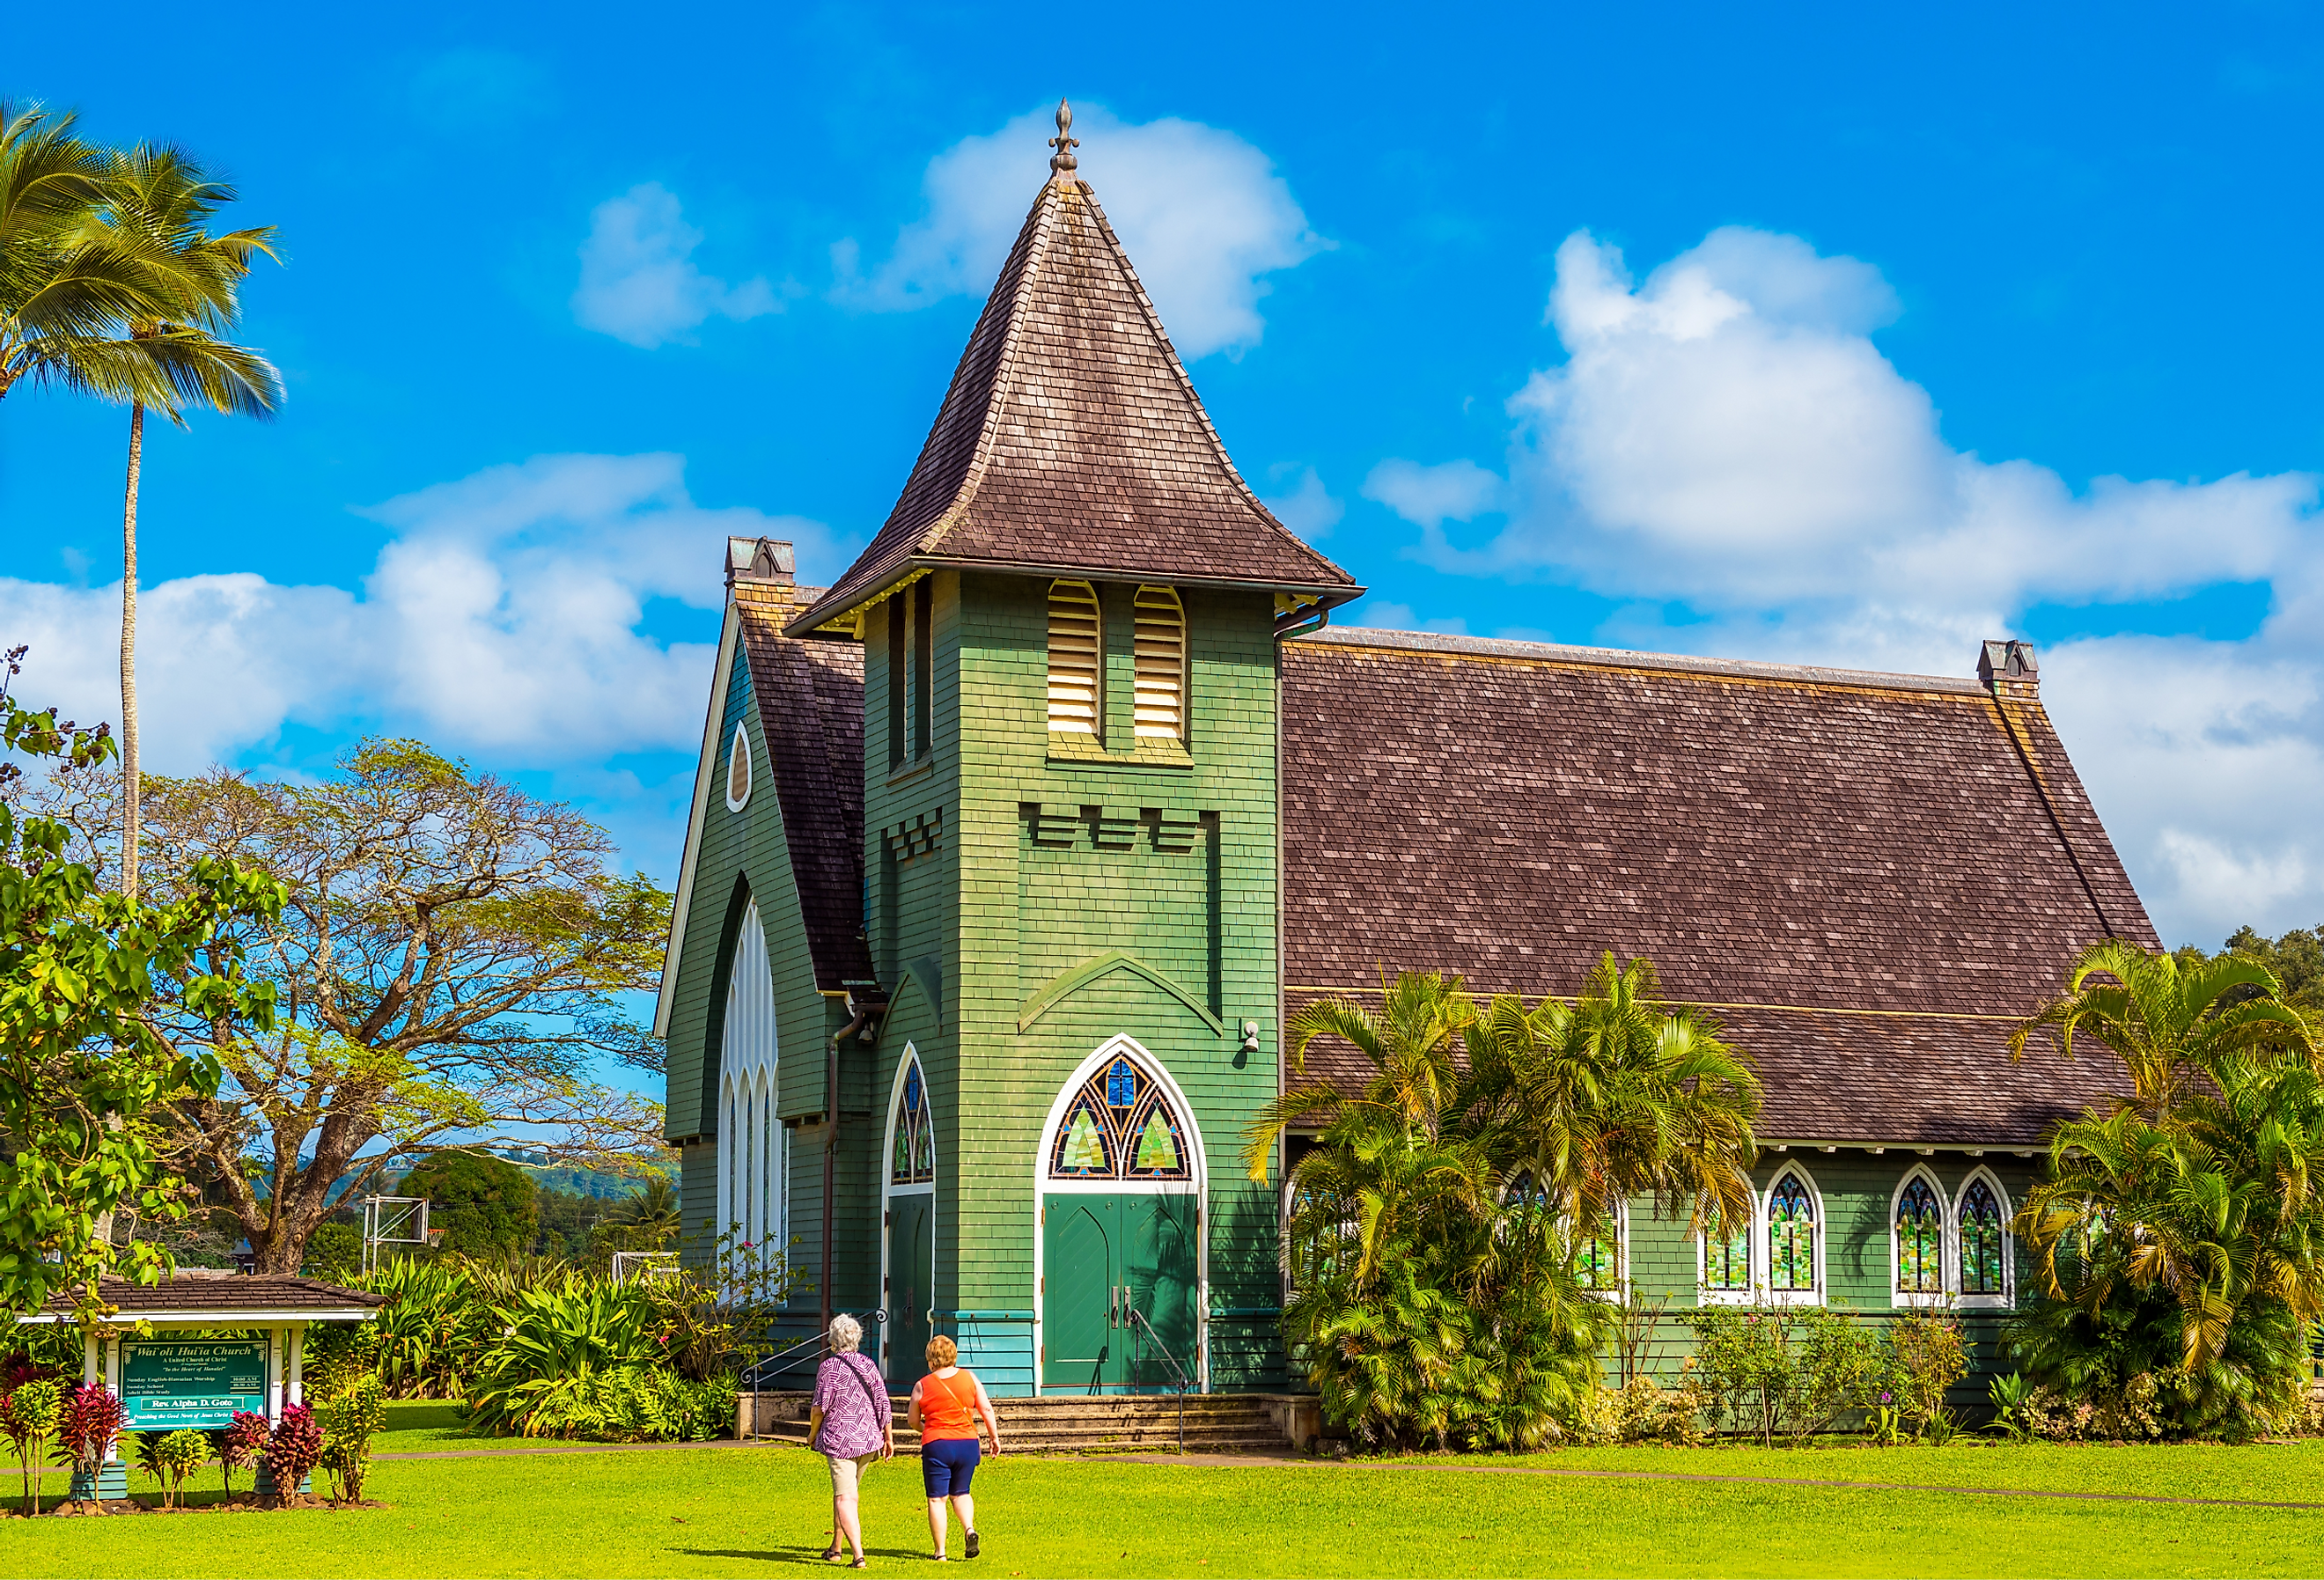 View of Waioli Huiia Church in Hanalei, Kauai. Image credit gg-foto via Shutterstock